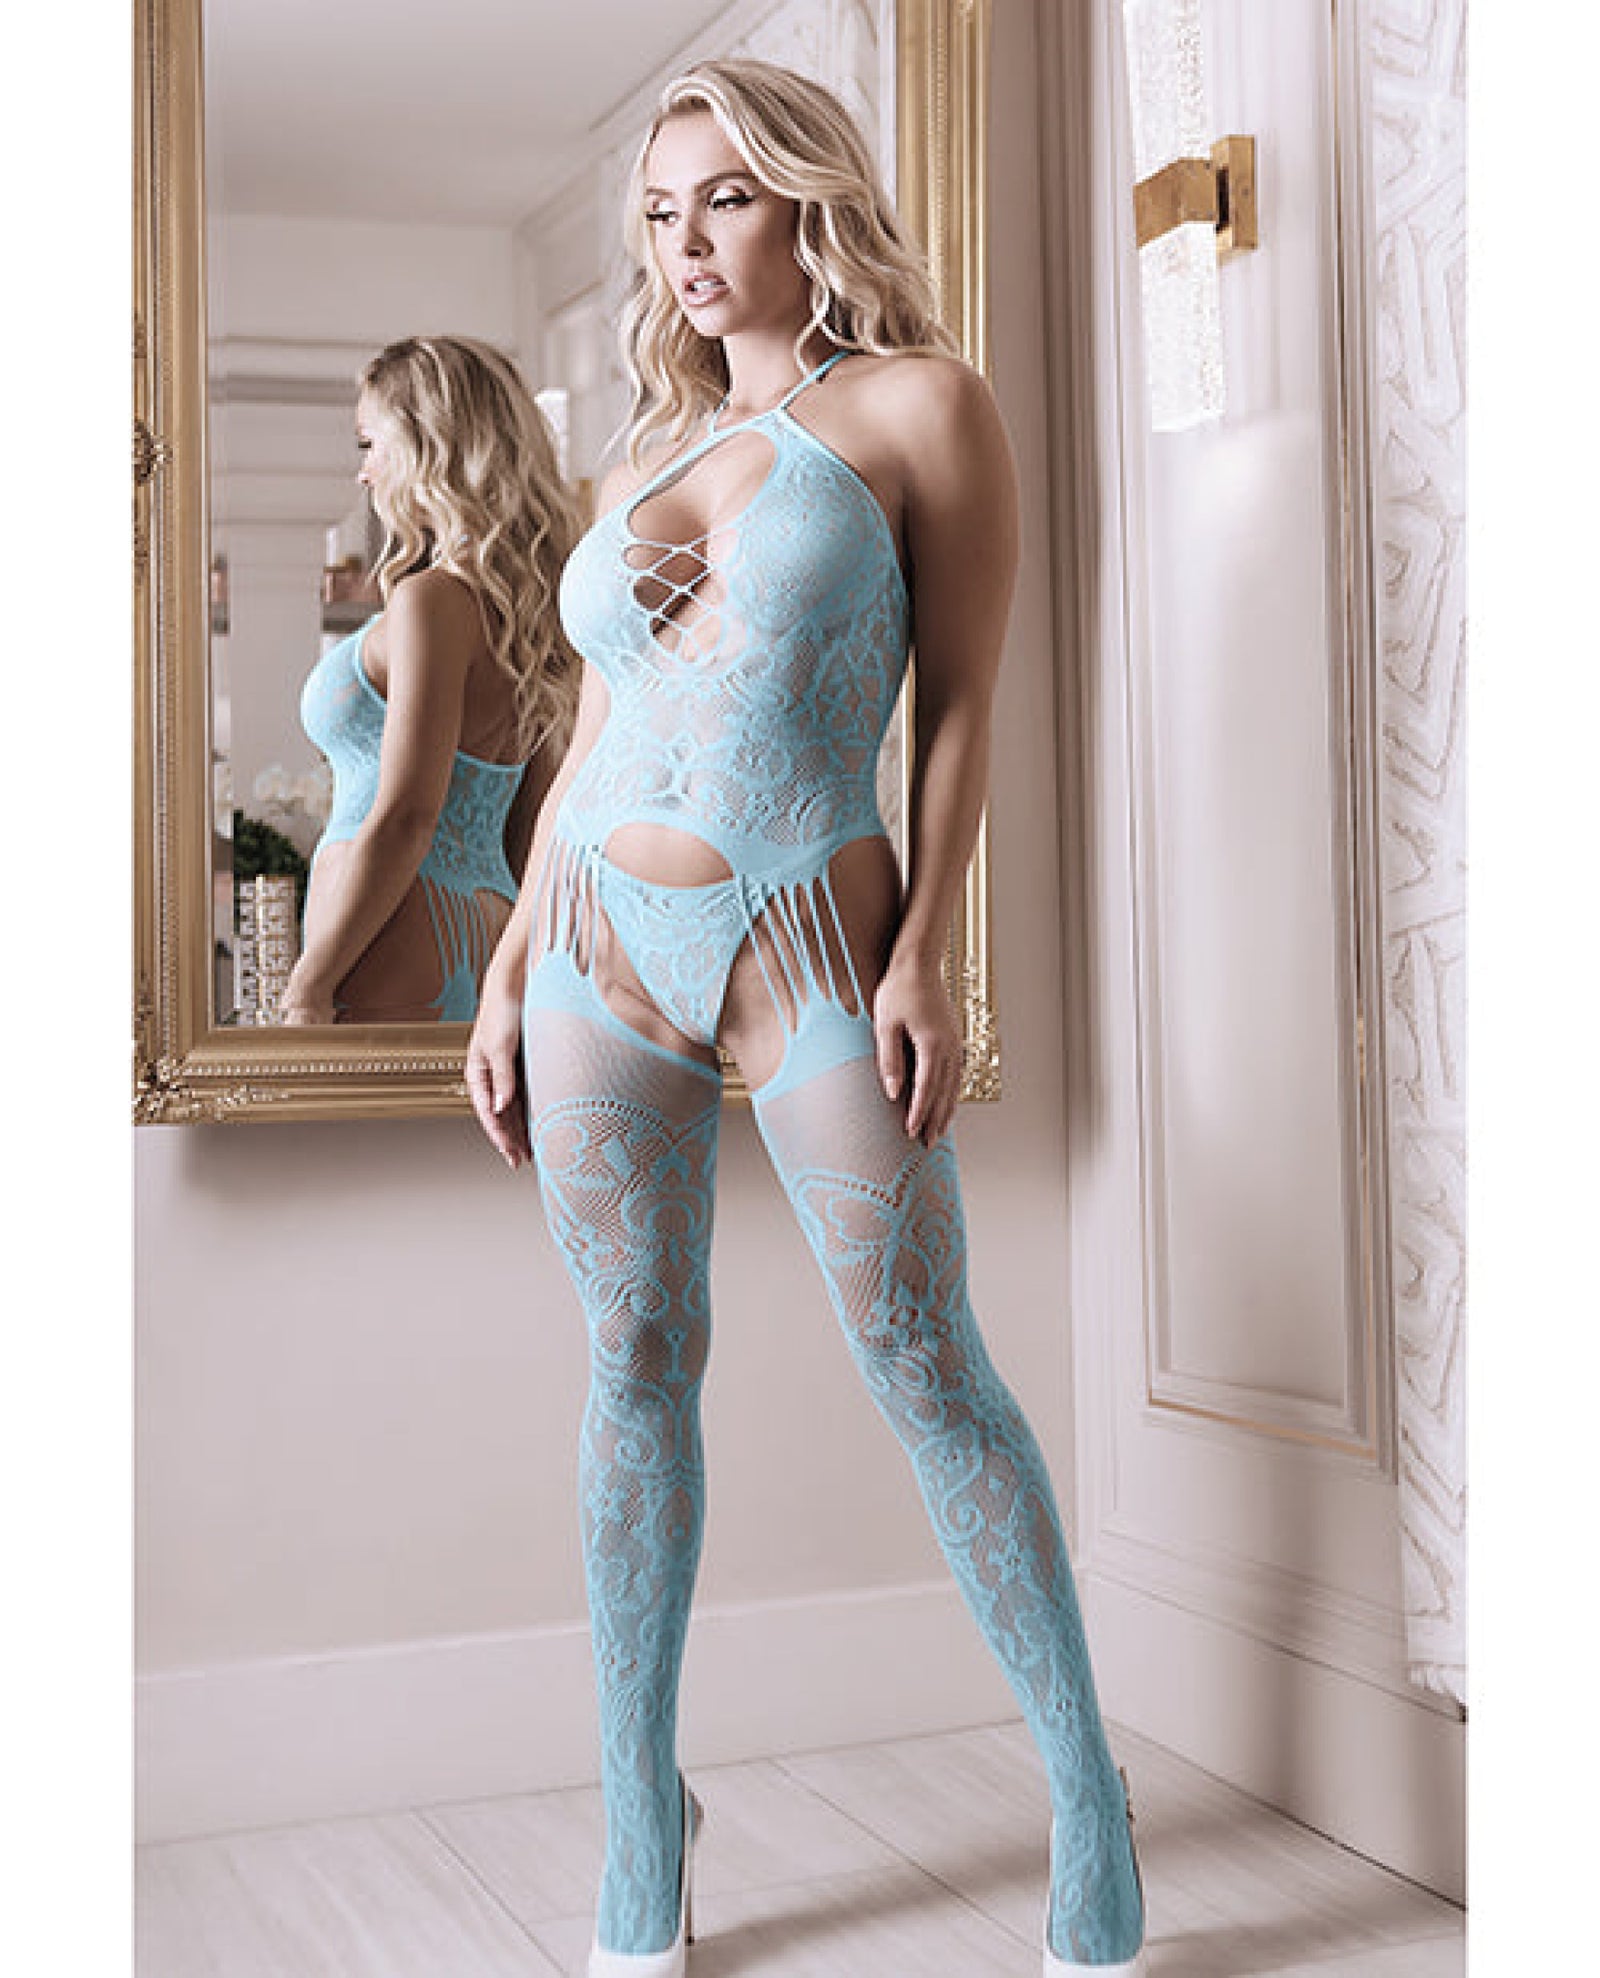 Sheer Fantasy Halter Neck Floral Lace Gartered Bodystocking & Panty Light Blue O-s Fantasy Lingerie